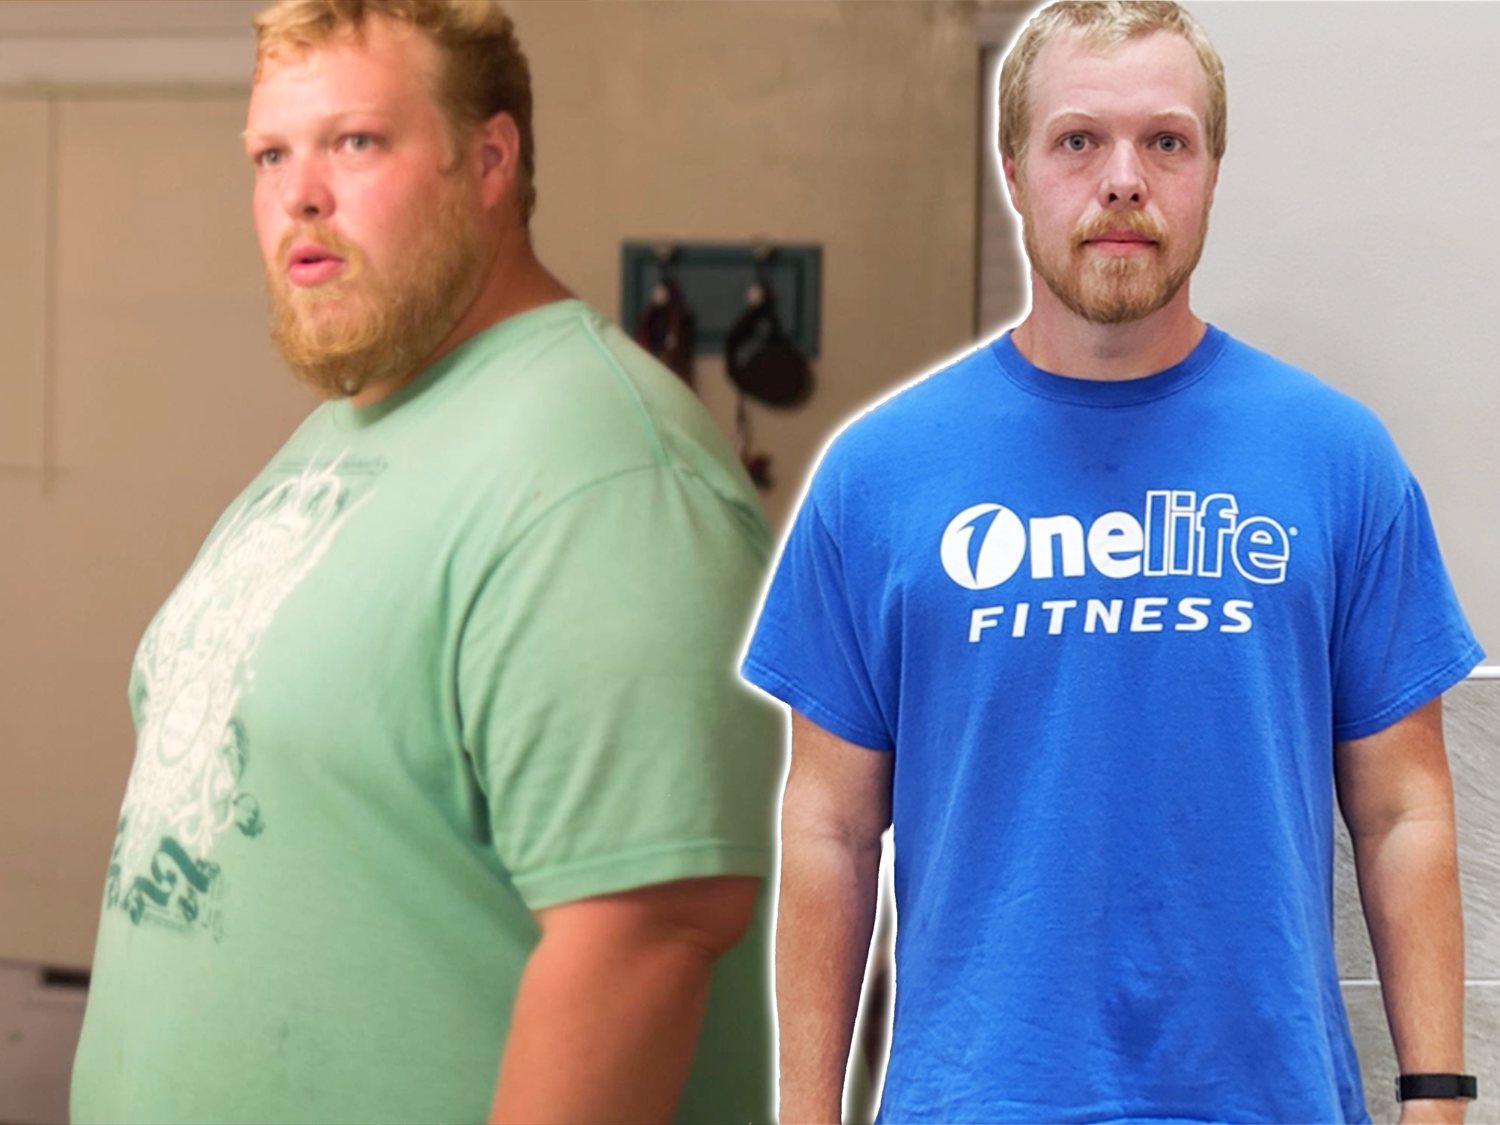 La sencilla rutina de ejercicio físico que ayudó a este hombre a perder 90 kilos